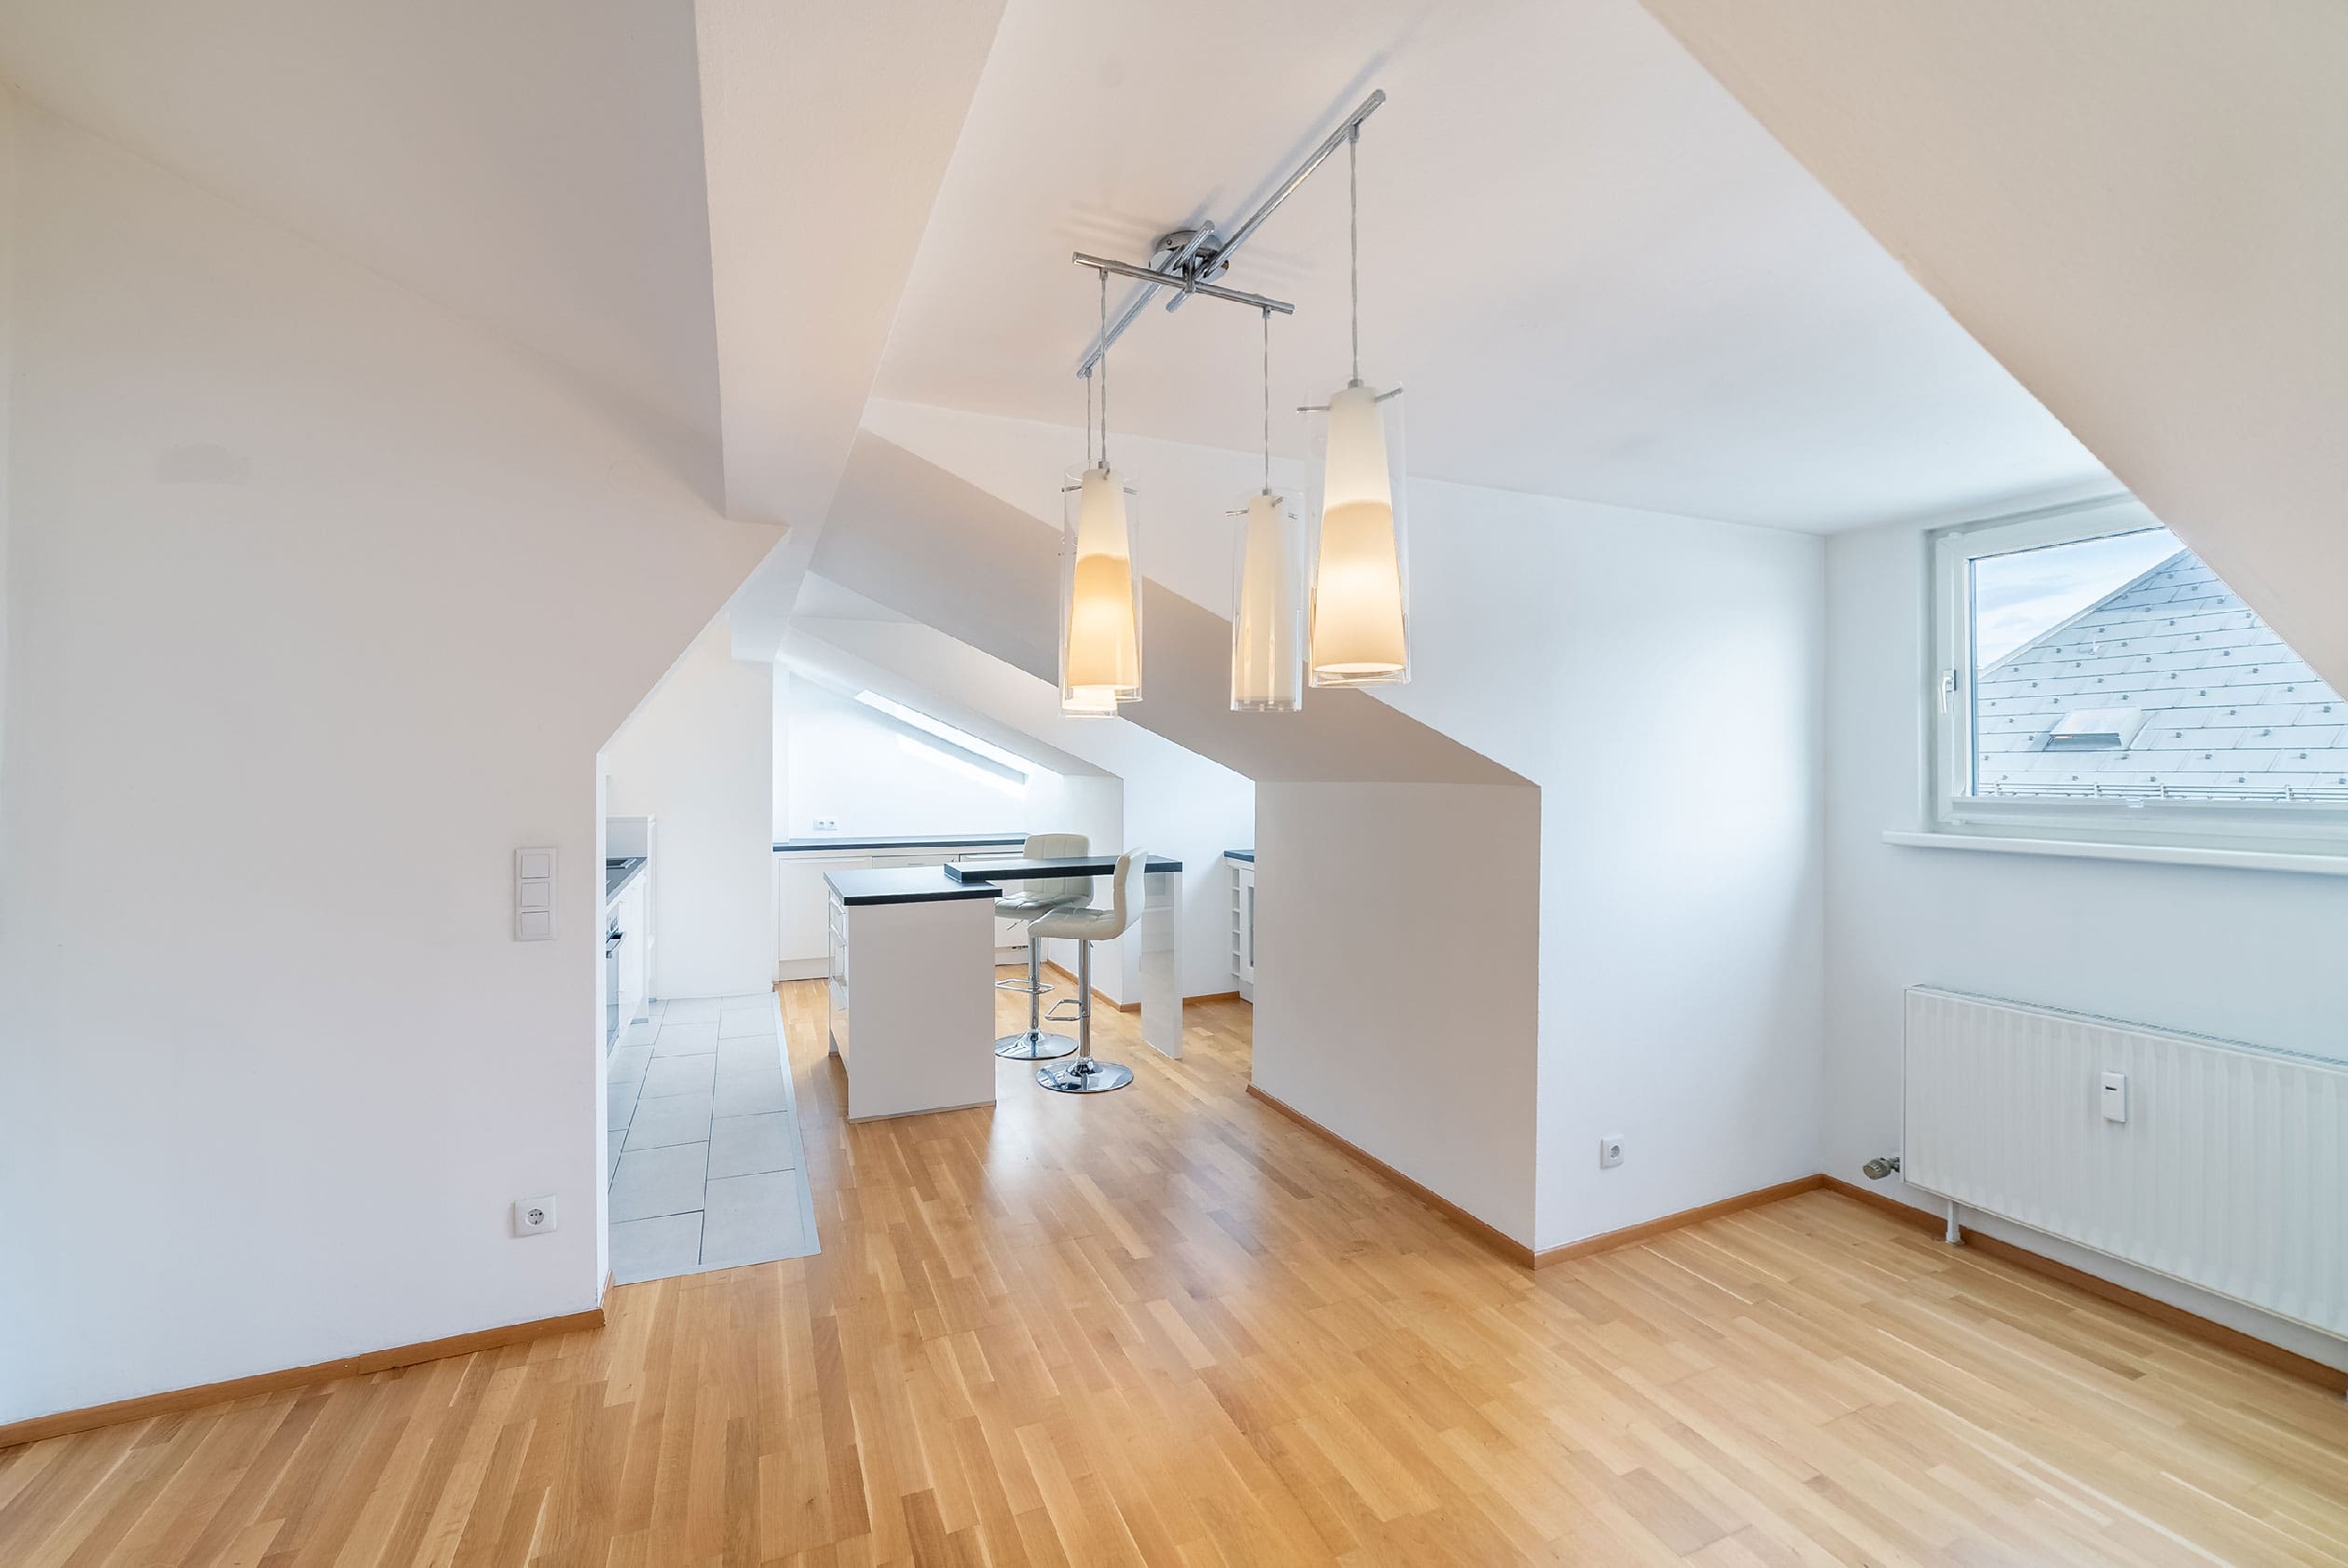 Im Wohnbereich mit charmanten Dachschrägen und der offenen Küche führt Sie eine Treppe auf die Dachterrasse, von welcher man einen "360°''-Blick über Salzburg genießt.